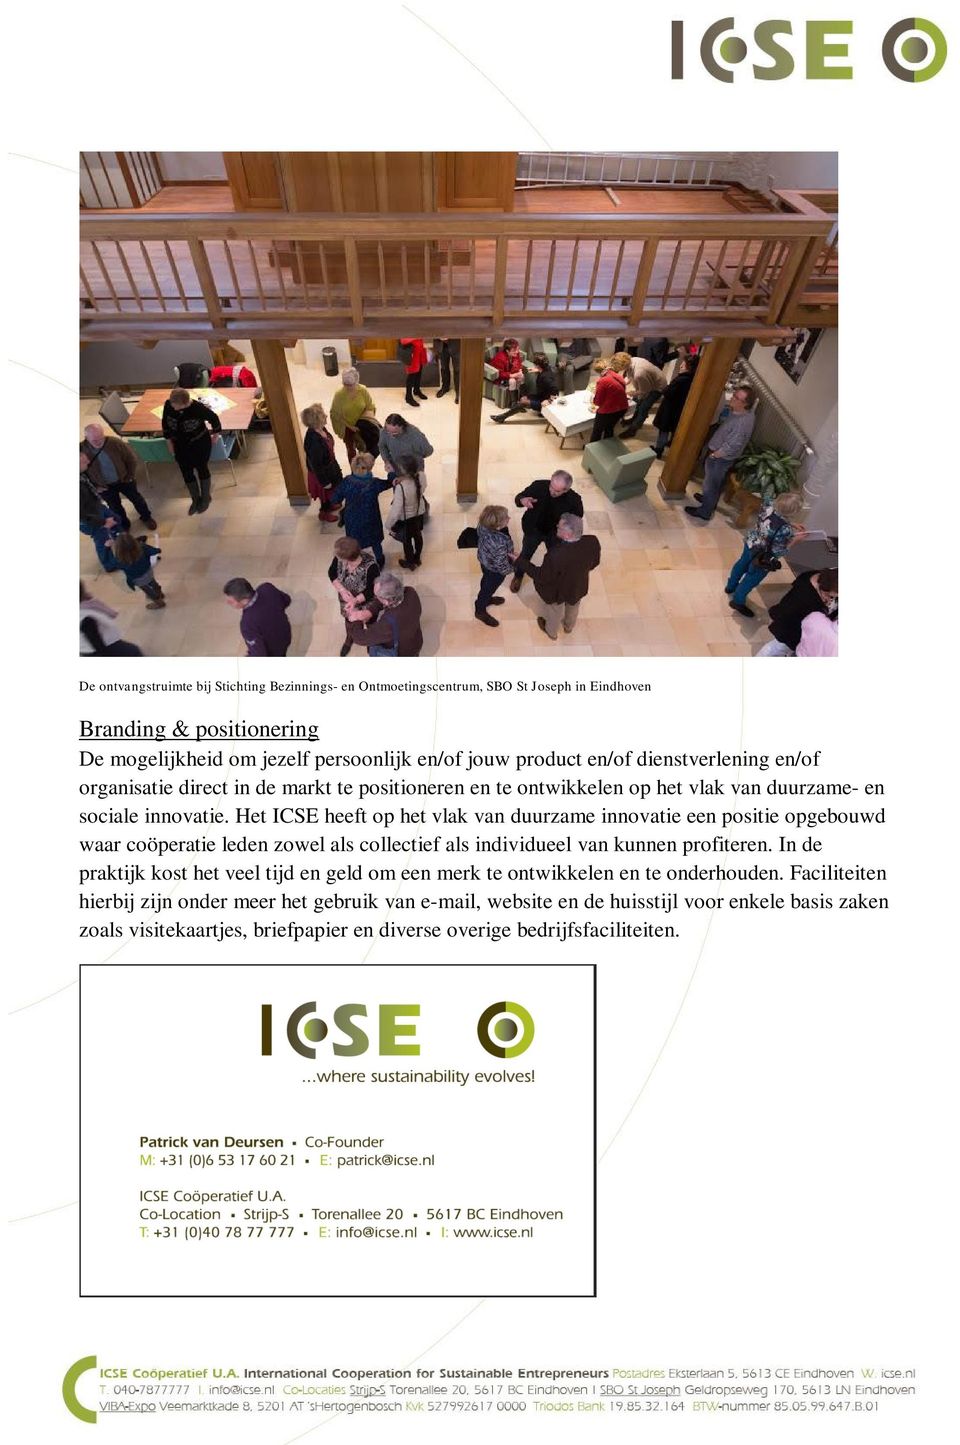 Het ICSE heeft op het vlak van duurzame innovatie een positie opgebouwd waar coöperatie leden zowel als collectief als individueel van kunnen profiteren.